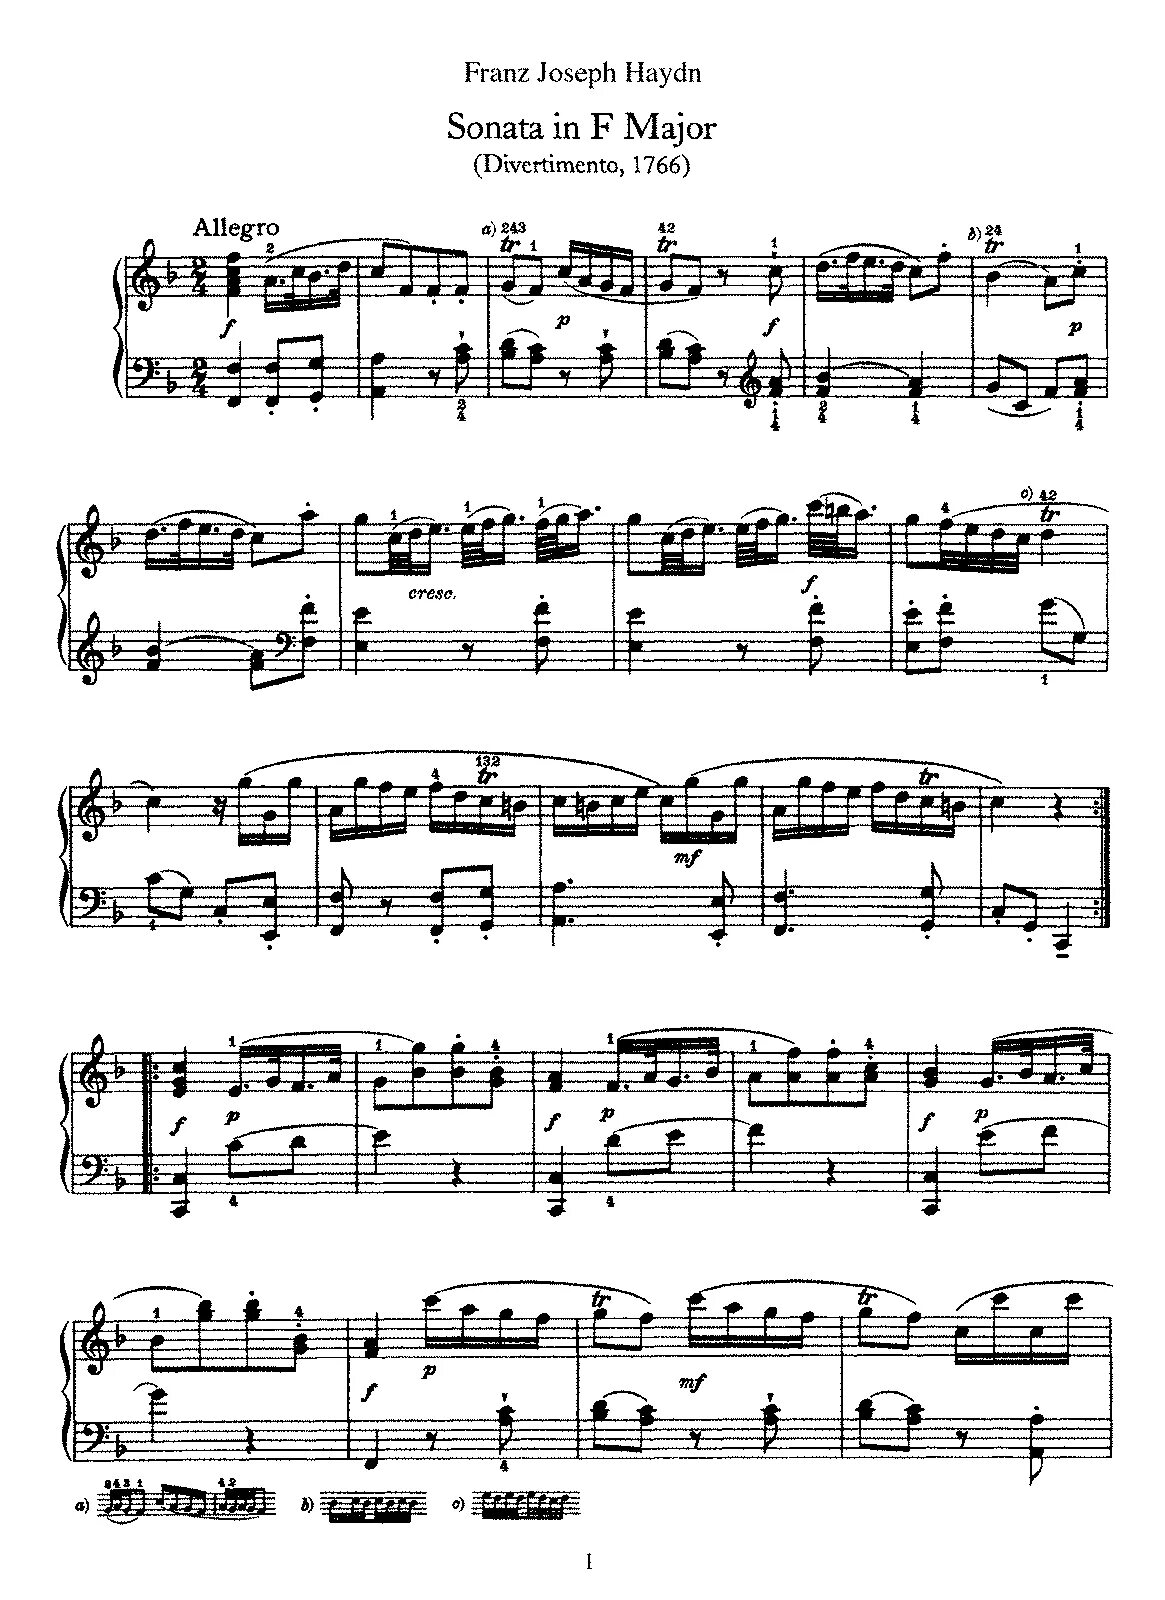 Бетховен соната для скрипки и фортепиано. Гайдн Соната фа мажор 1 часть. Гайдн Соната 21 фа мажор. Гайдн Сонатина фа мажор Ноты. Гайдн Соната фа мажор Аллегро 3 часть для фортепиано.